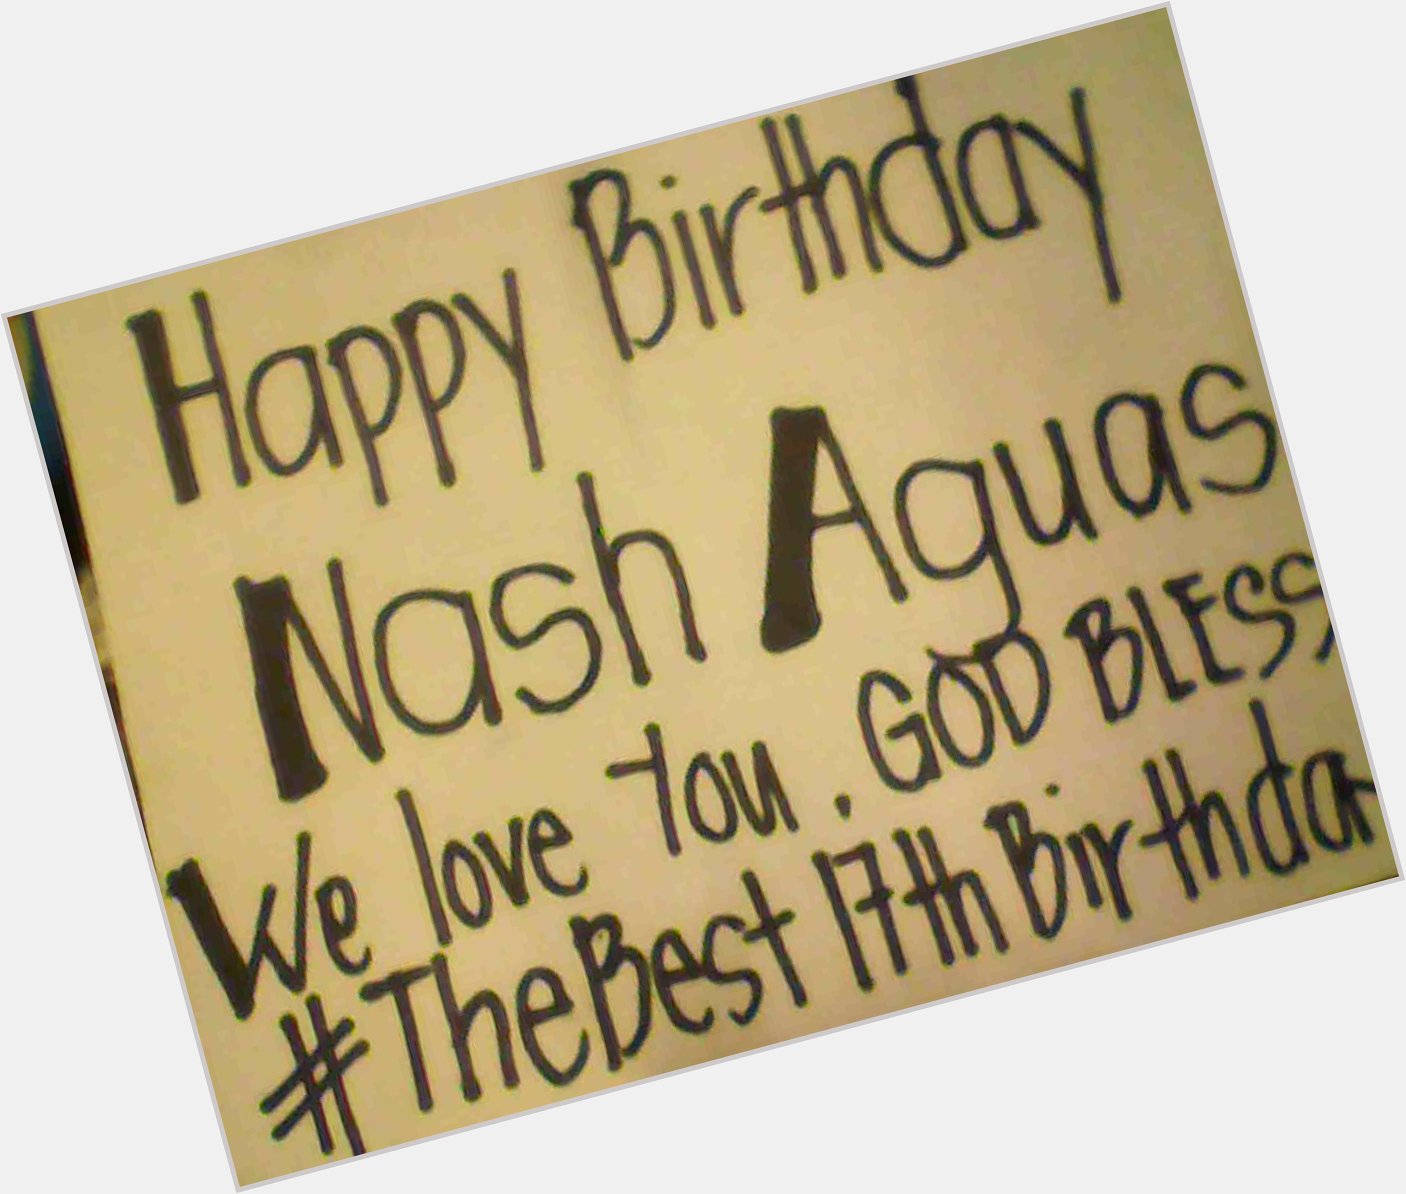 Happy 17th Birthday NASH AGUAS!
 From jhenny ..
god bless 